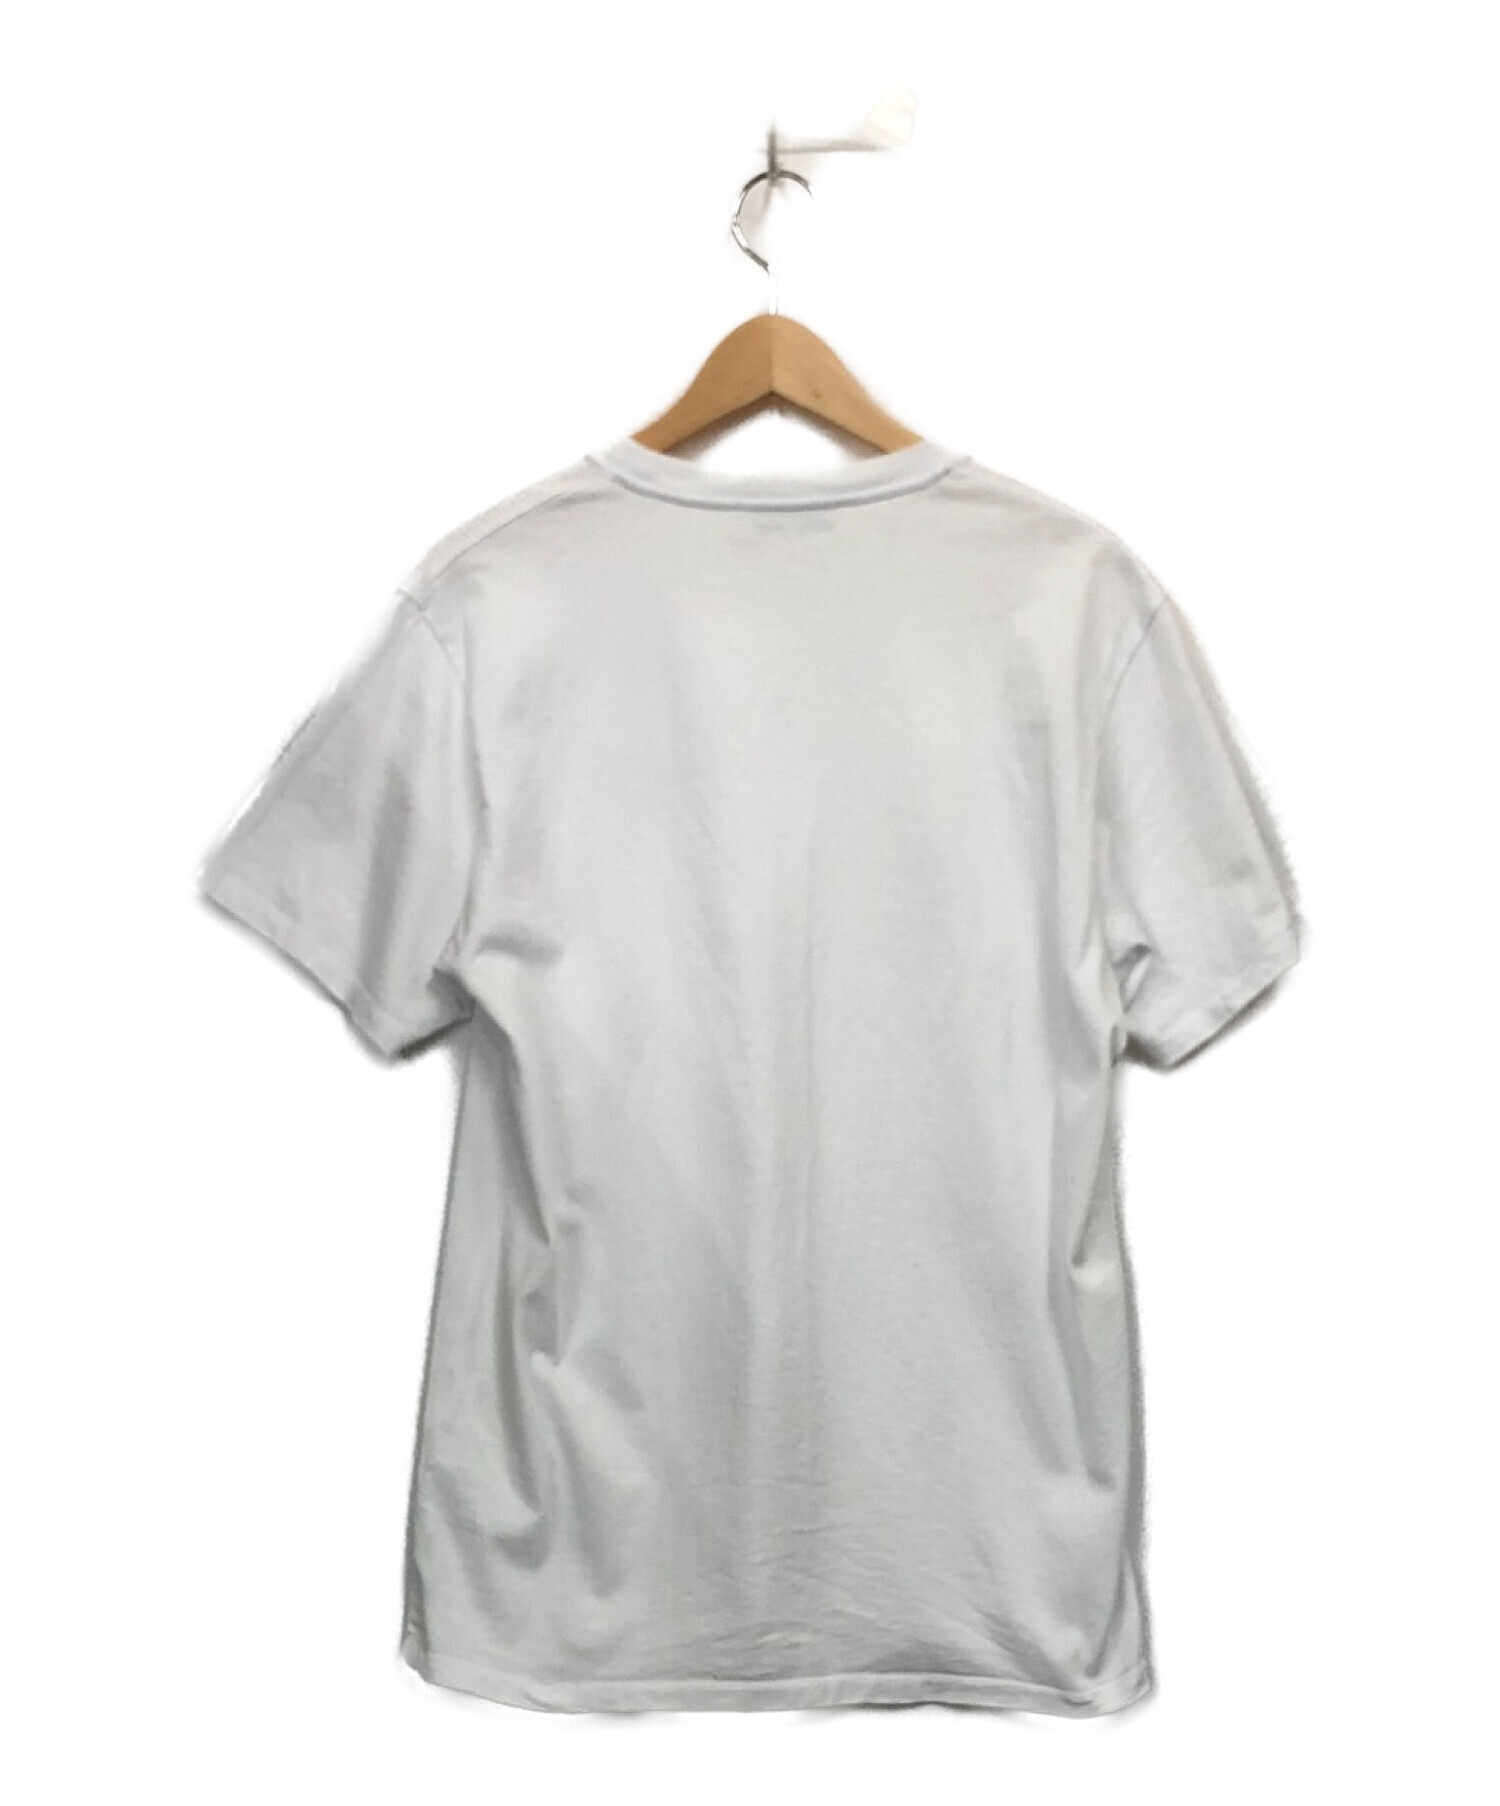 maison kitsune (メゾンキツネ) Tシャツ ホワイト サイズ:M